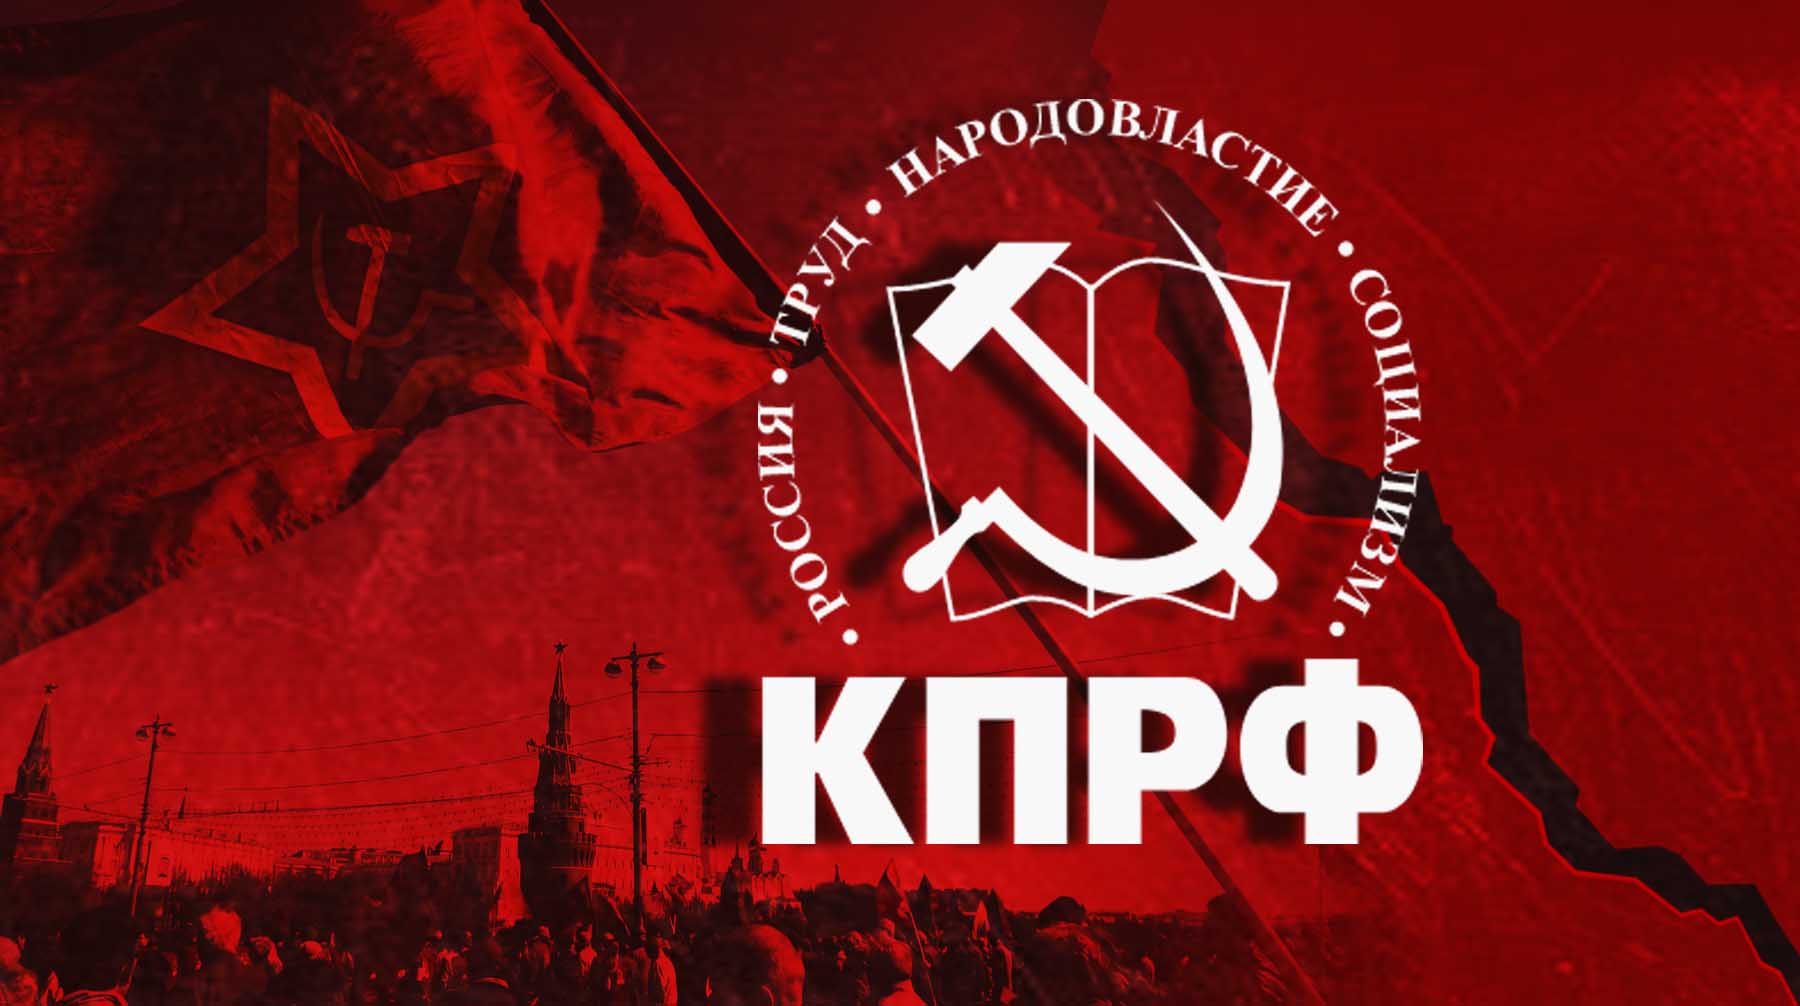 Группа московских комсомольцев обвинила КПРФ в предательстве идей коммунизма